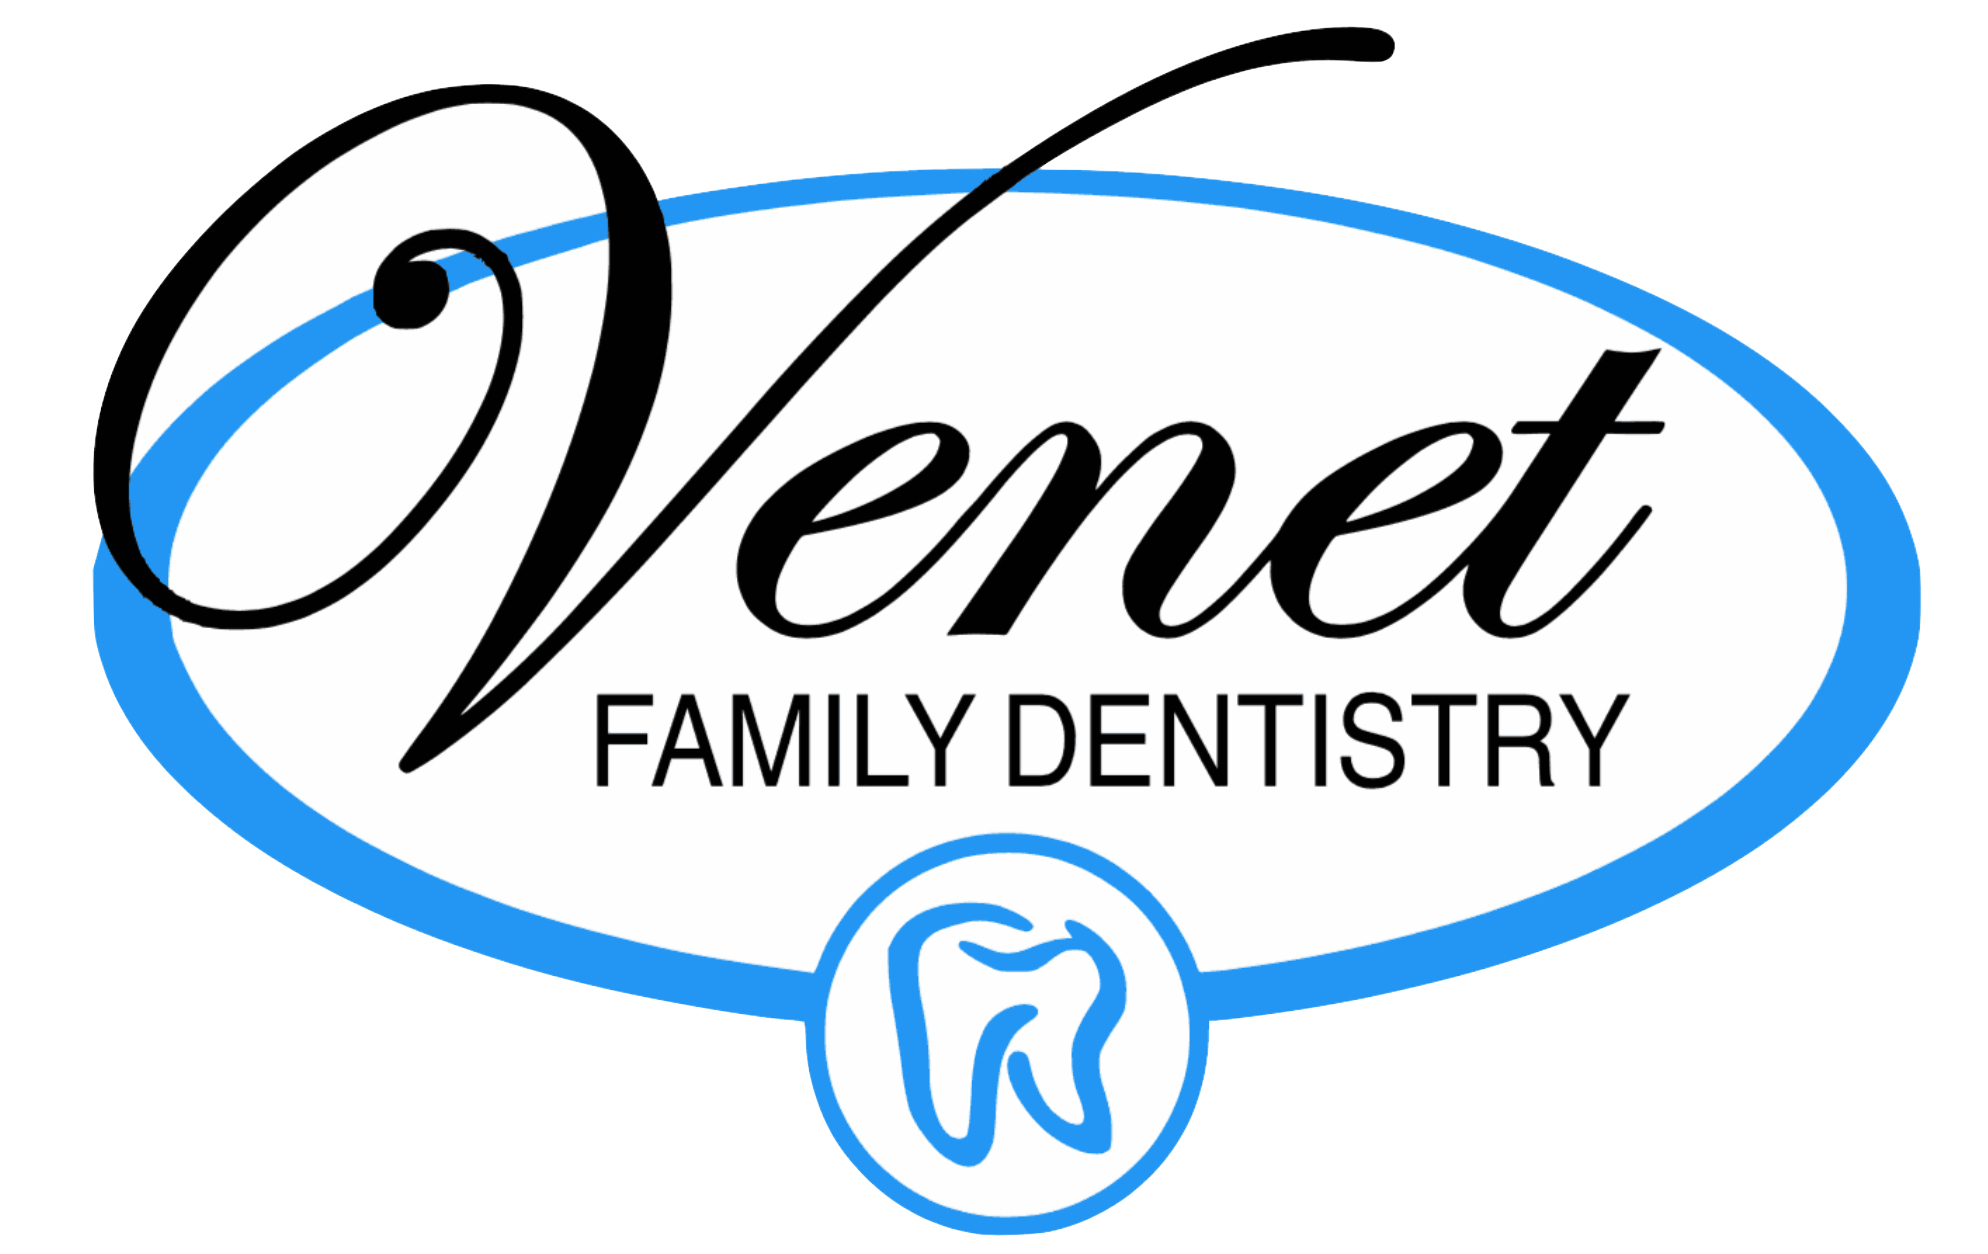 Venet Family Dentistry